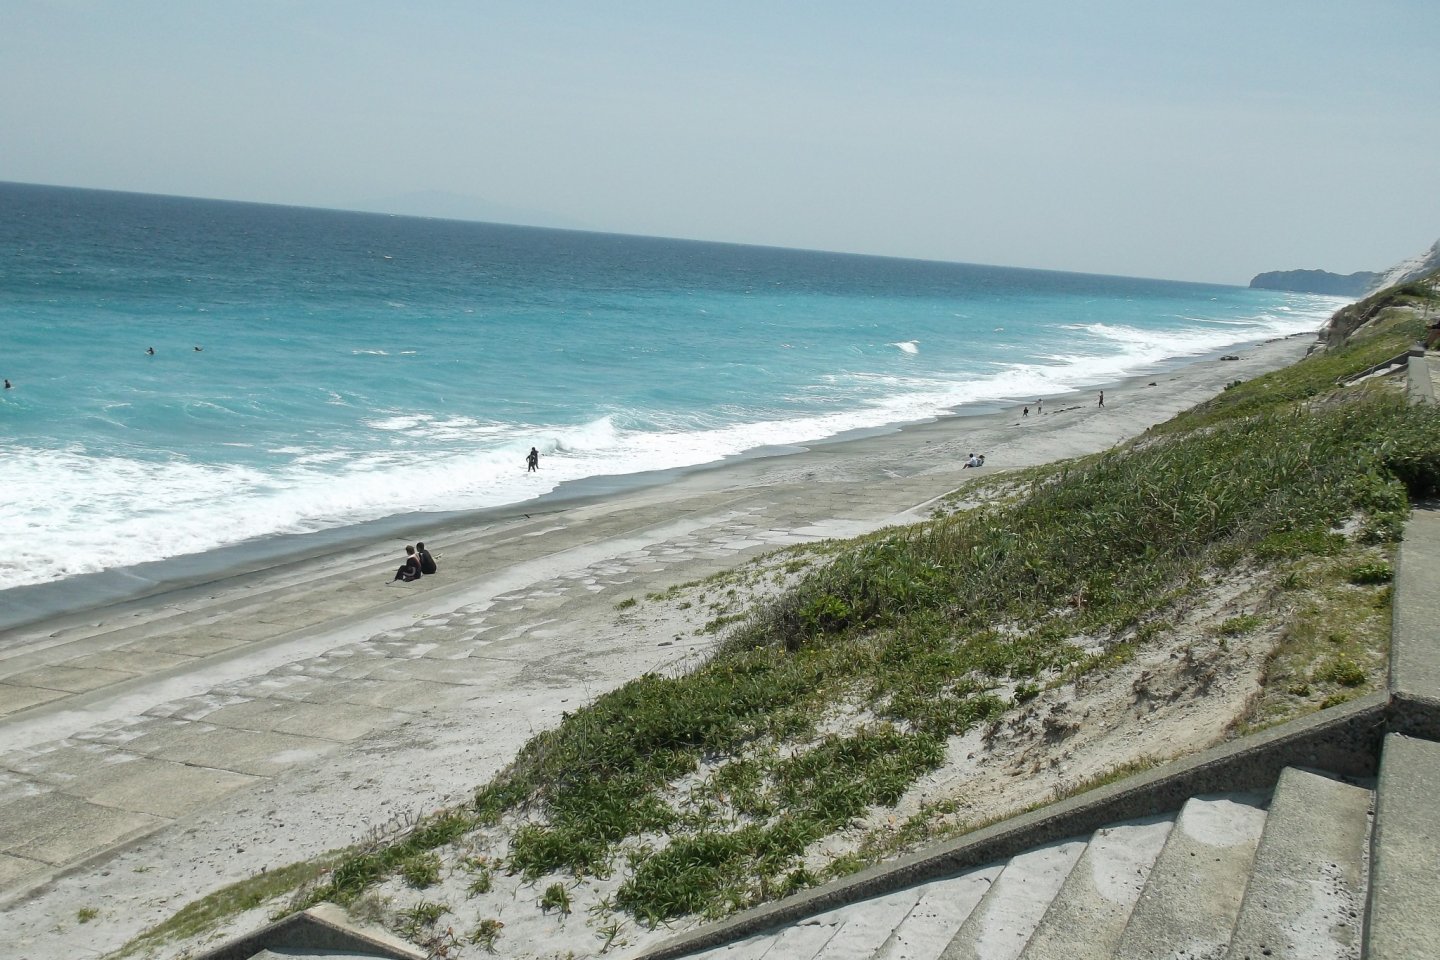 شاطئ هابوشيورا منطقة ذات شهرة عالمية لركوب الأمواج.